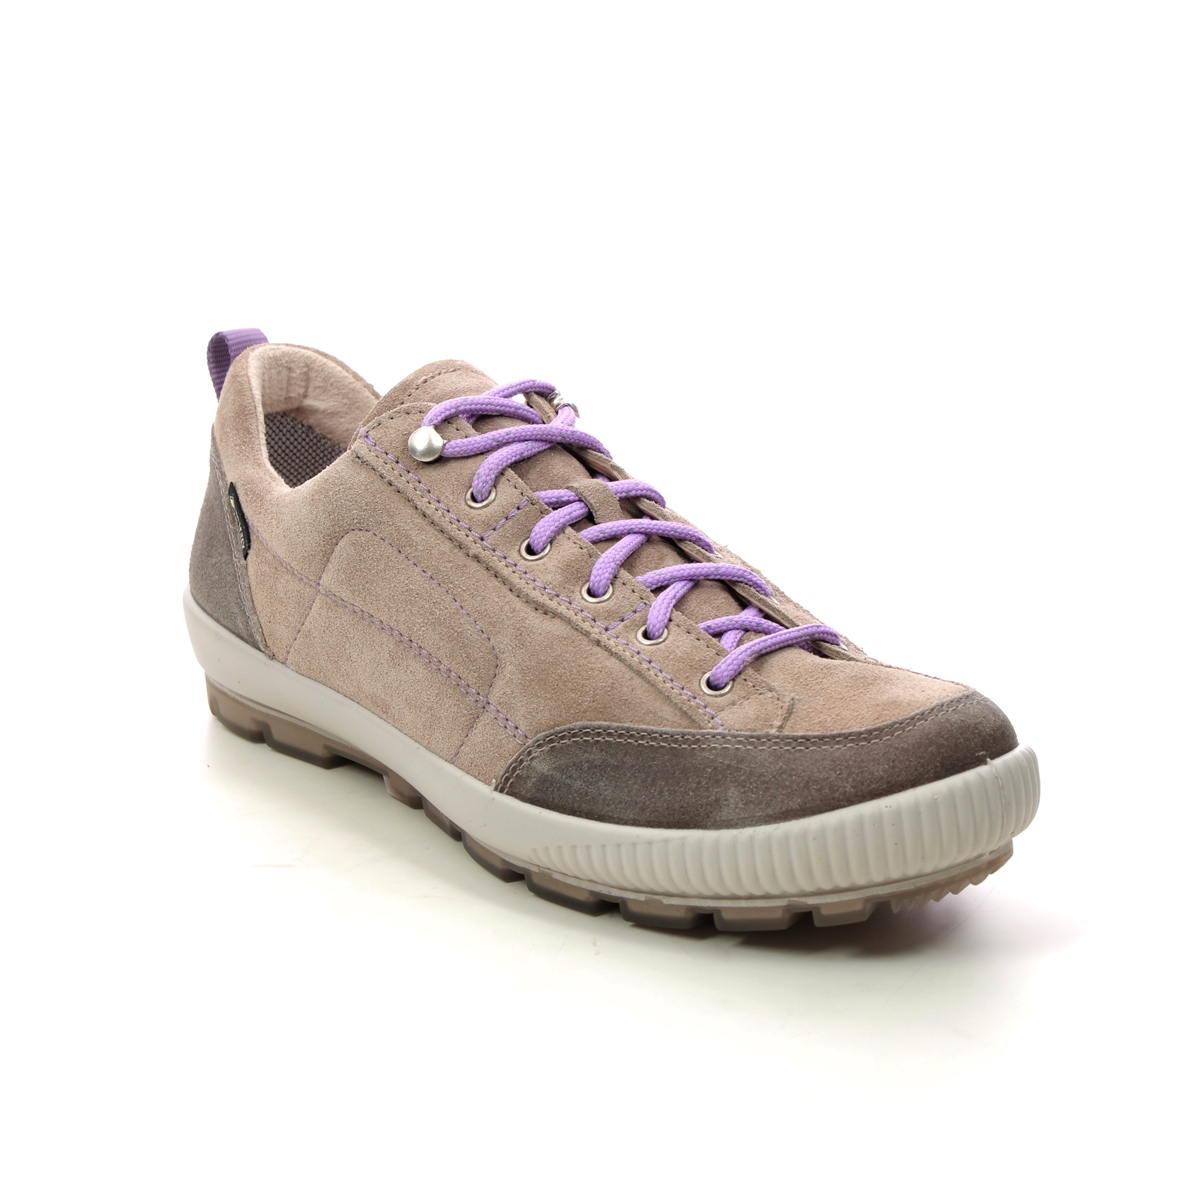 Legero Tanaro Trek Gtx Beige leather Womens Walking Shoes 2000210-4500 in a Plain Leather in Size 8